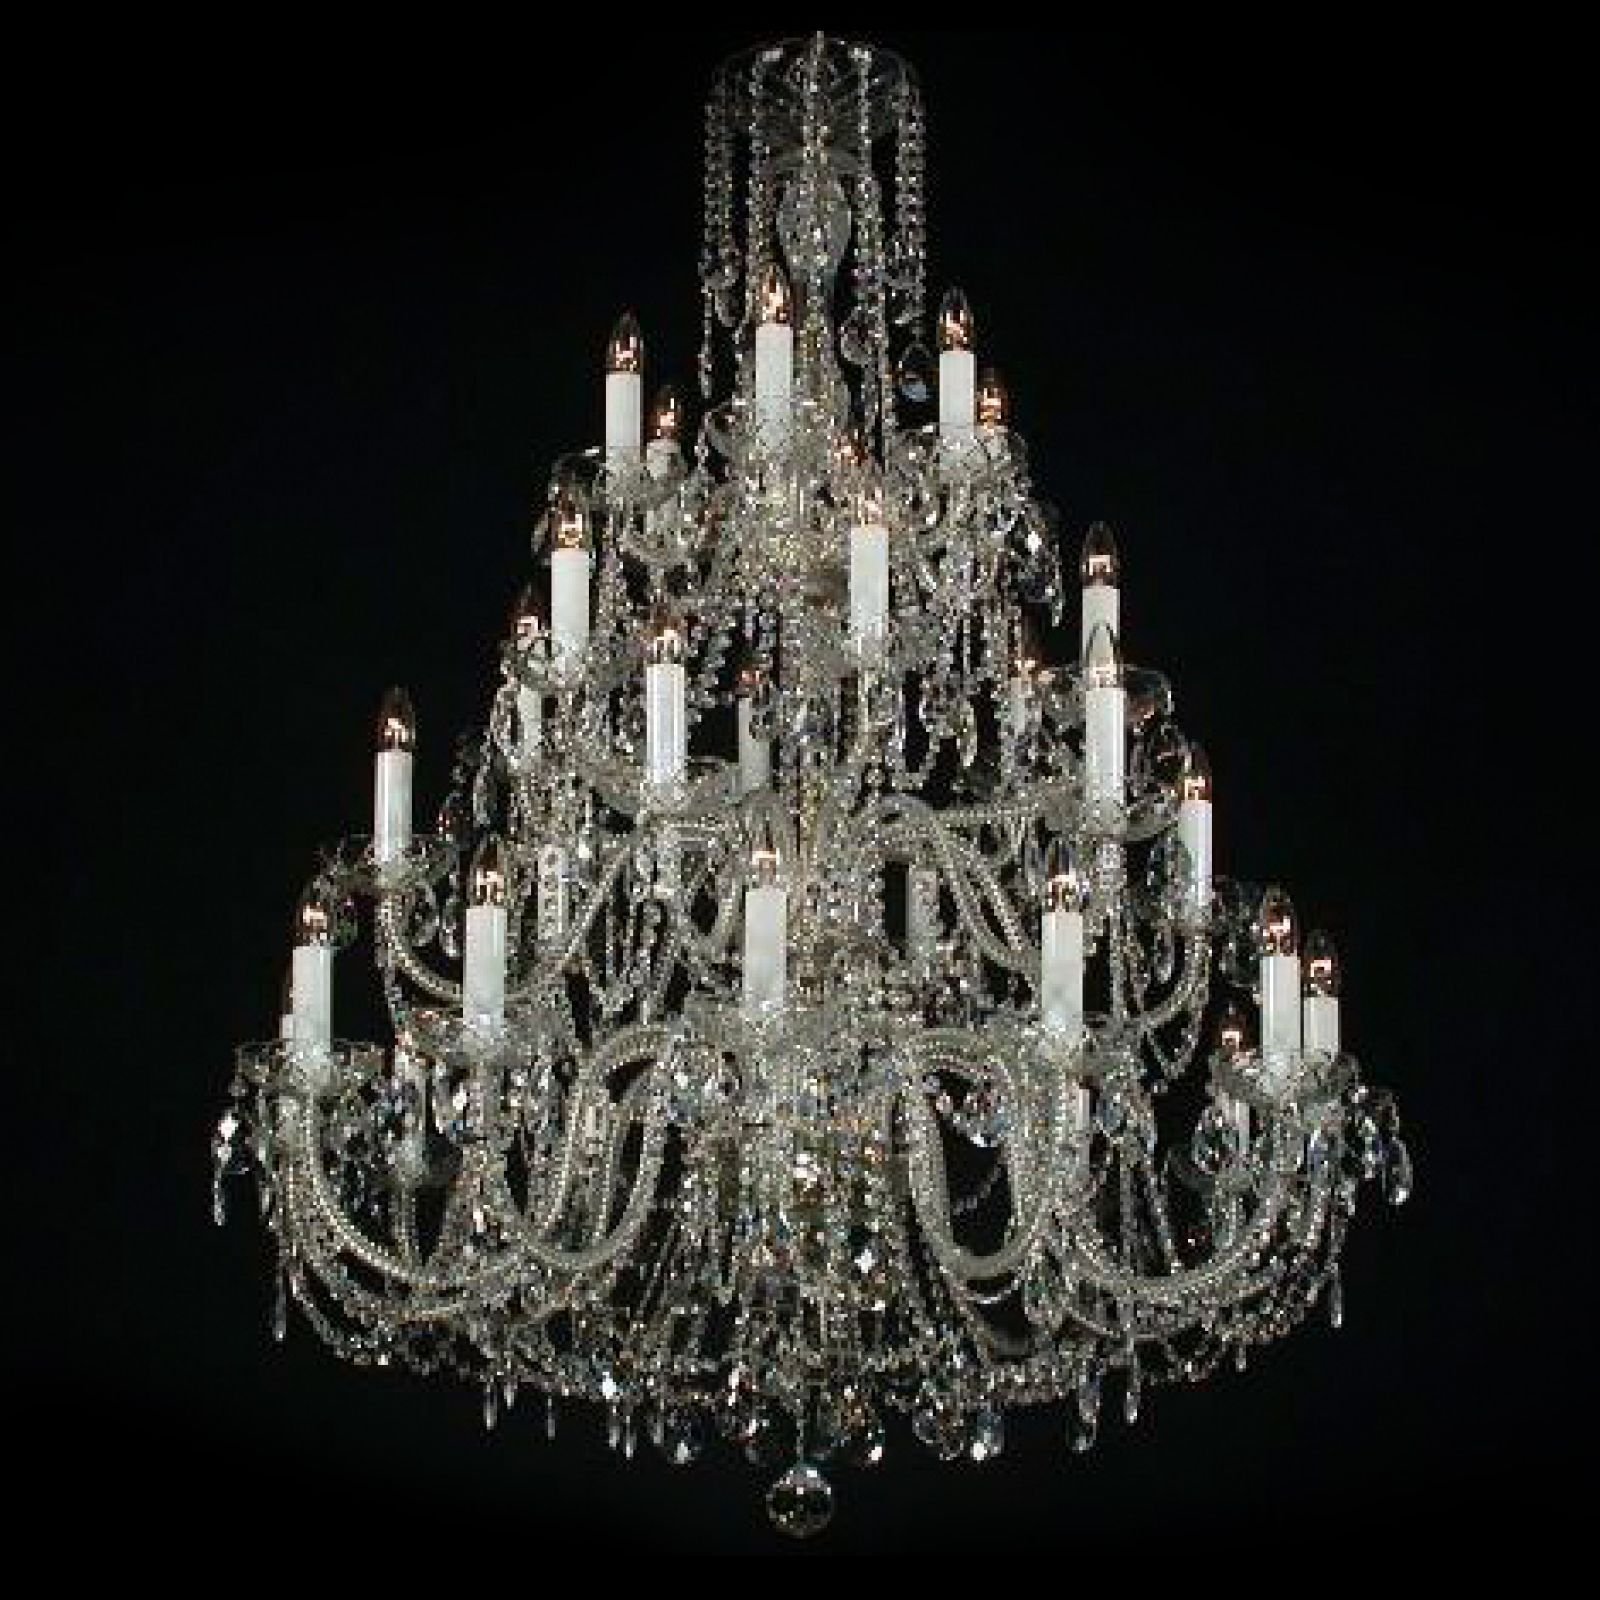 Sumptuous large chandelier